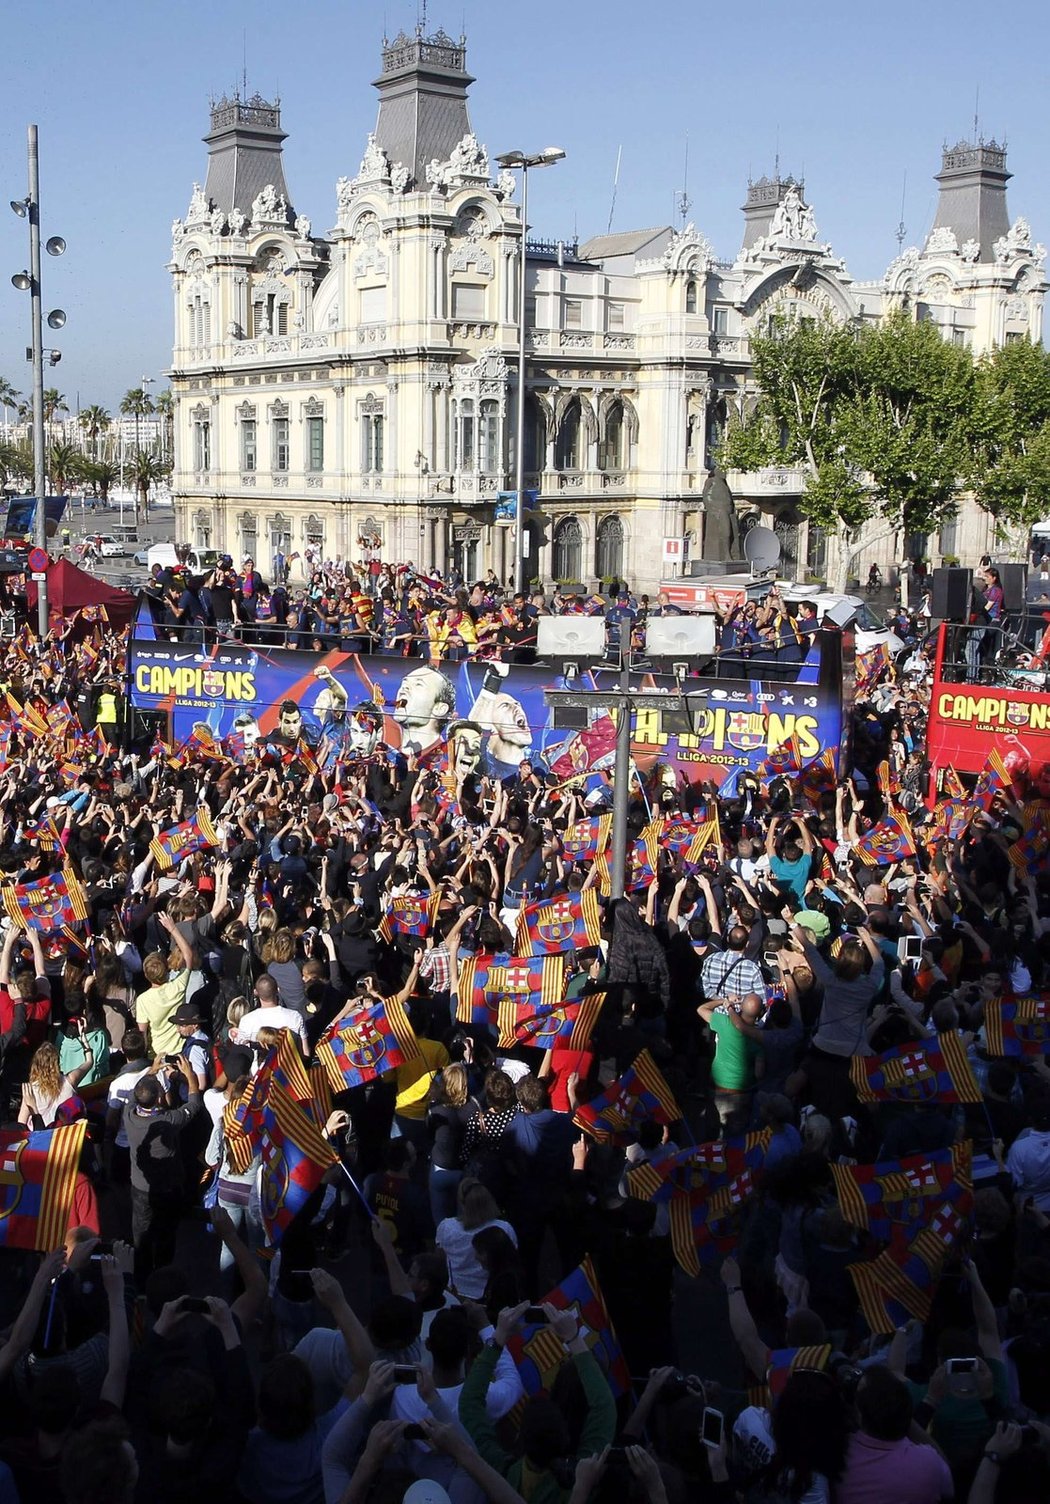 Barcelona minulou sezonu slavila ligový titul. Kdo ji ale povede za úspěchy v nové sezoně?